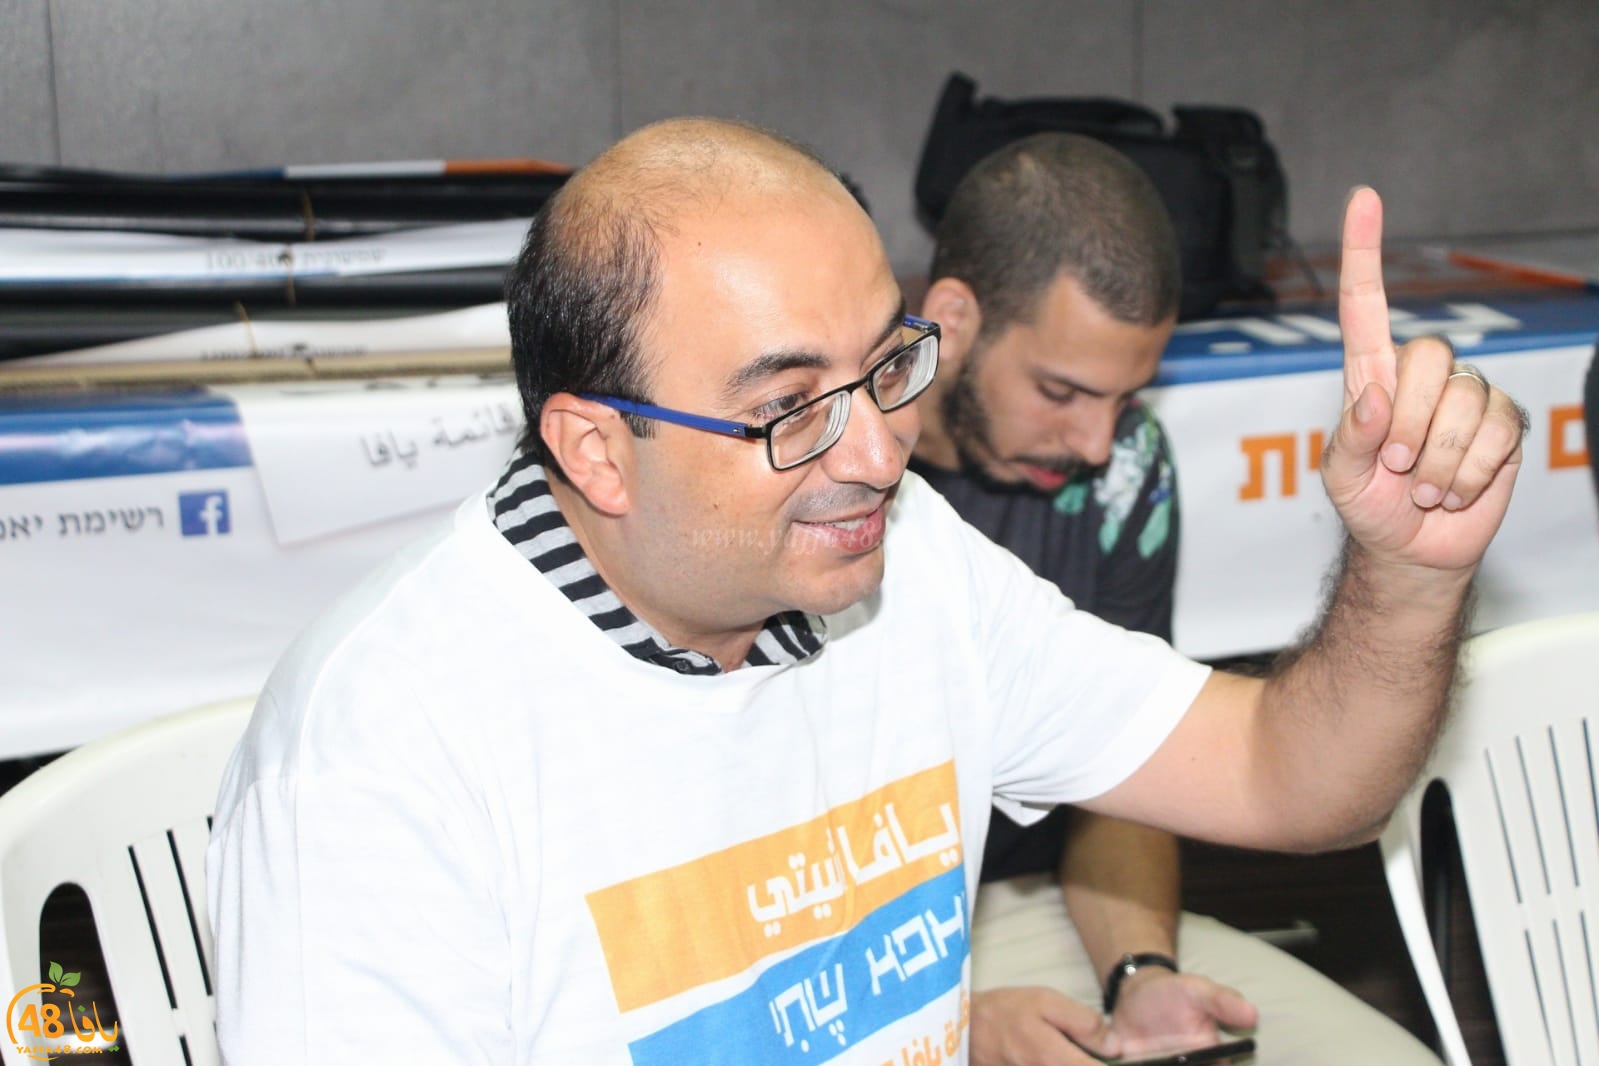 صور: قائمة يافا تفتتح مقرها الجديد تحضيرًا للحملة الانتخابية للانتخابات مجلس البلدي